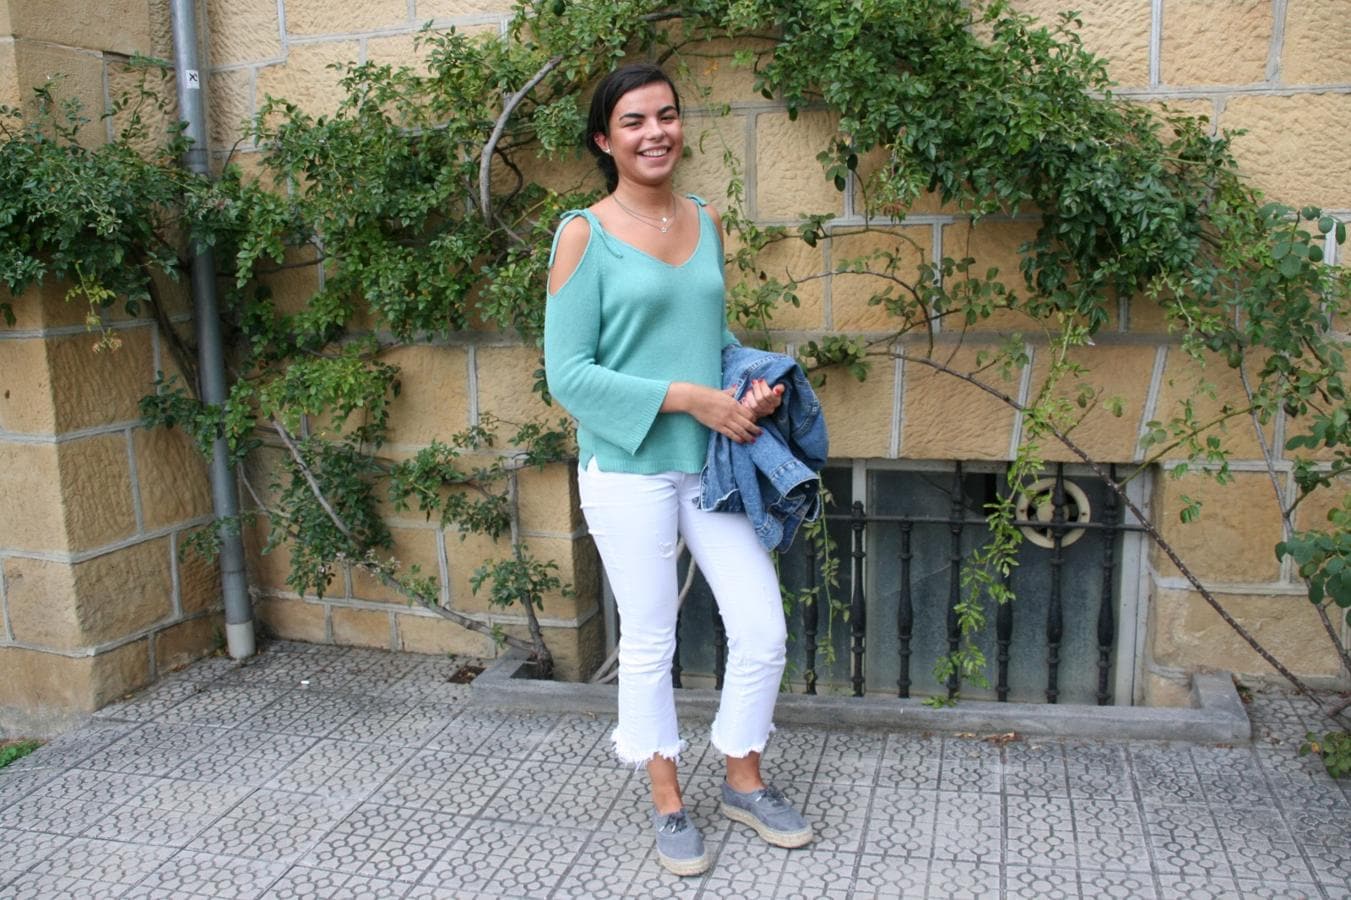 María Carranza, de 19 años, define su estilo como “casual”. Luce unos pantalones blancos de la firma Rennata & Go, que ha combinado con un jersey verde con los hombros descubiertos y unas zapatillas, ambos de Brownie. La chaqueta vaquera es de Pull & Bear.